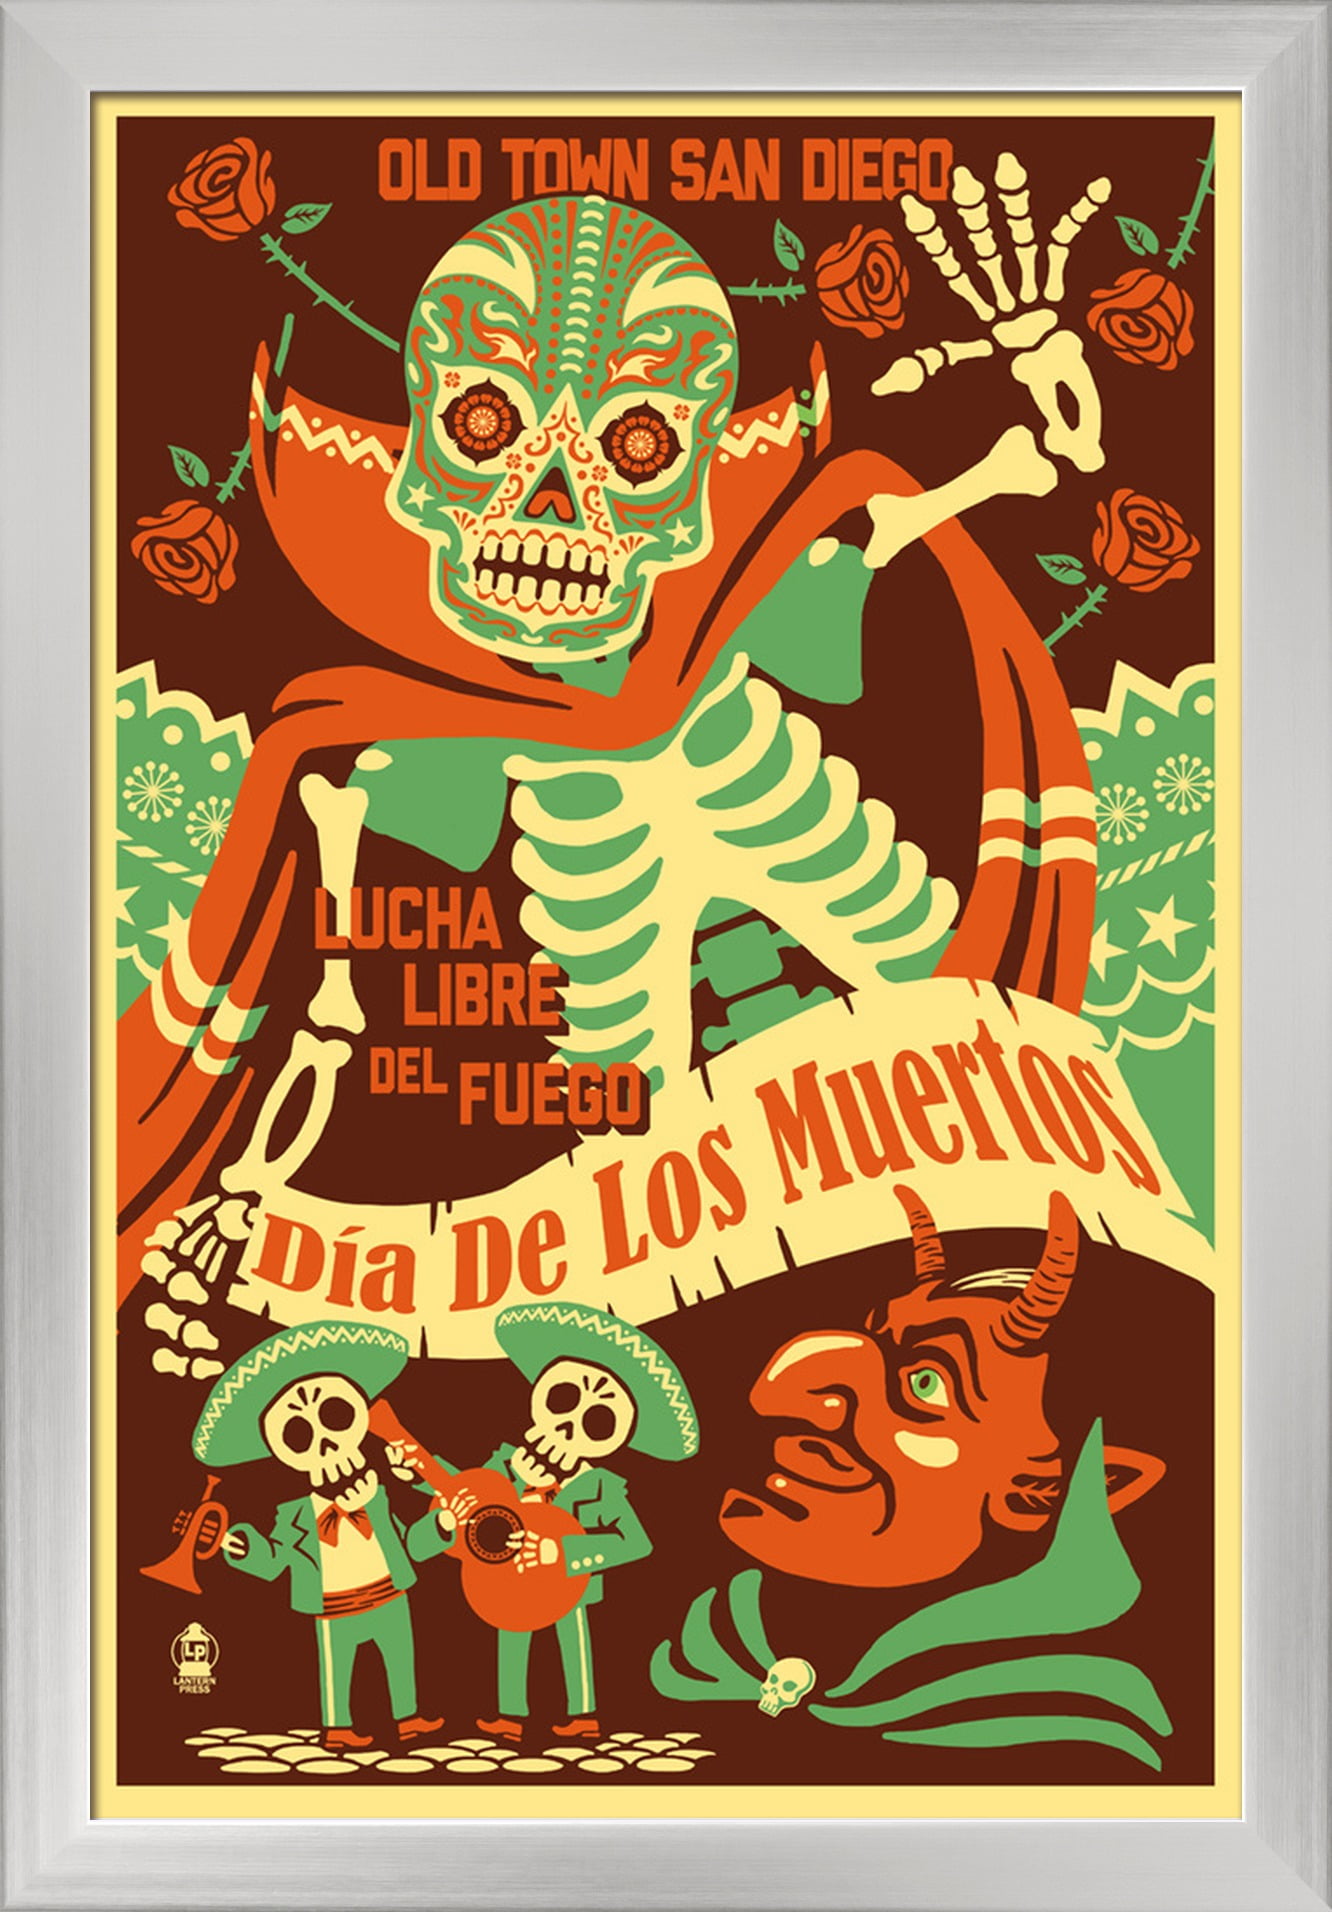 Old Town San Diego Dia de los Muertos (Day of the Dead) Lucha Libre